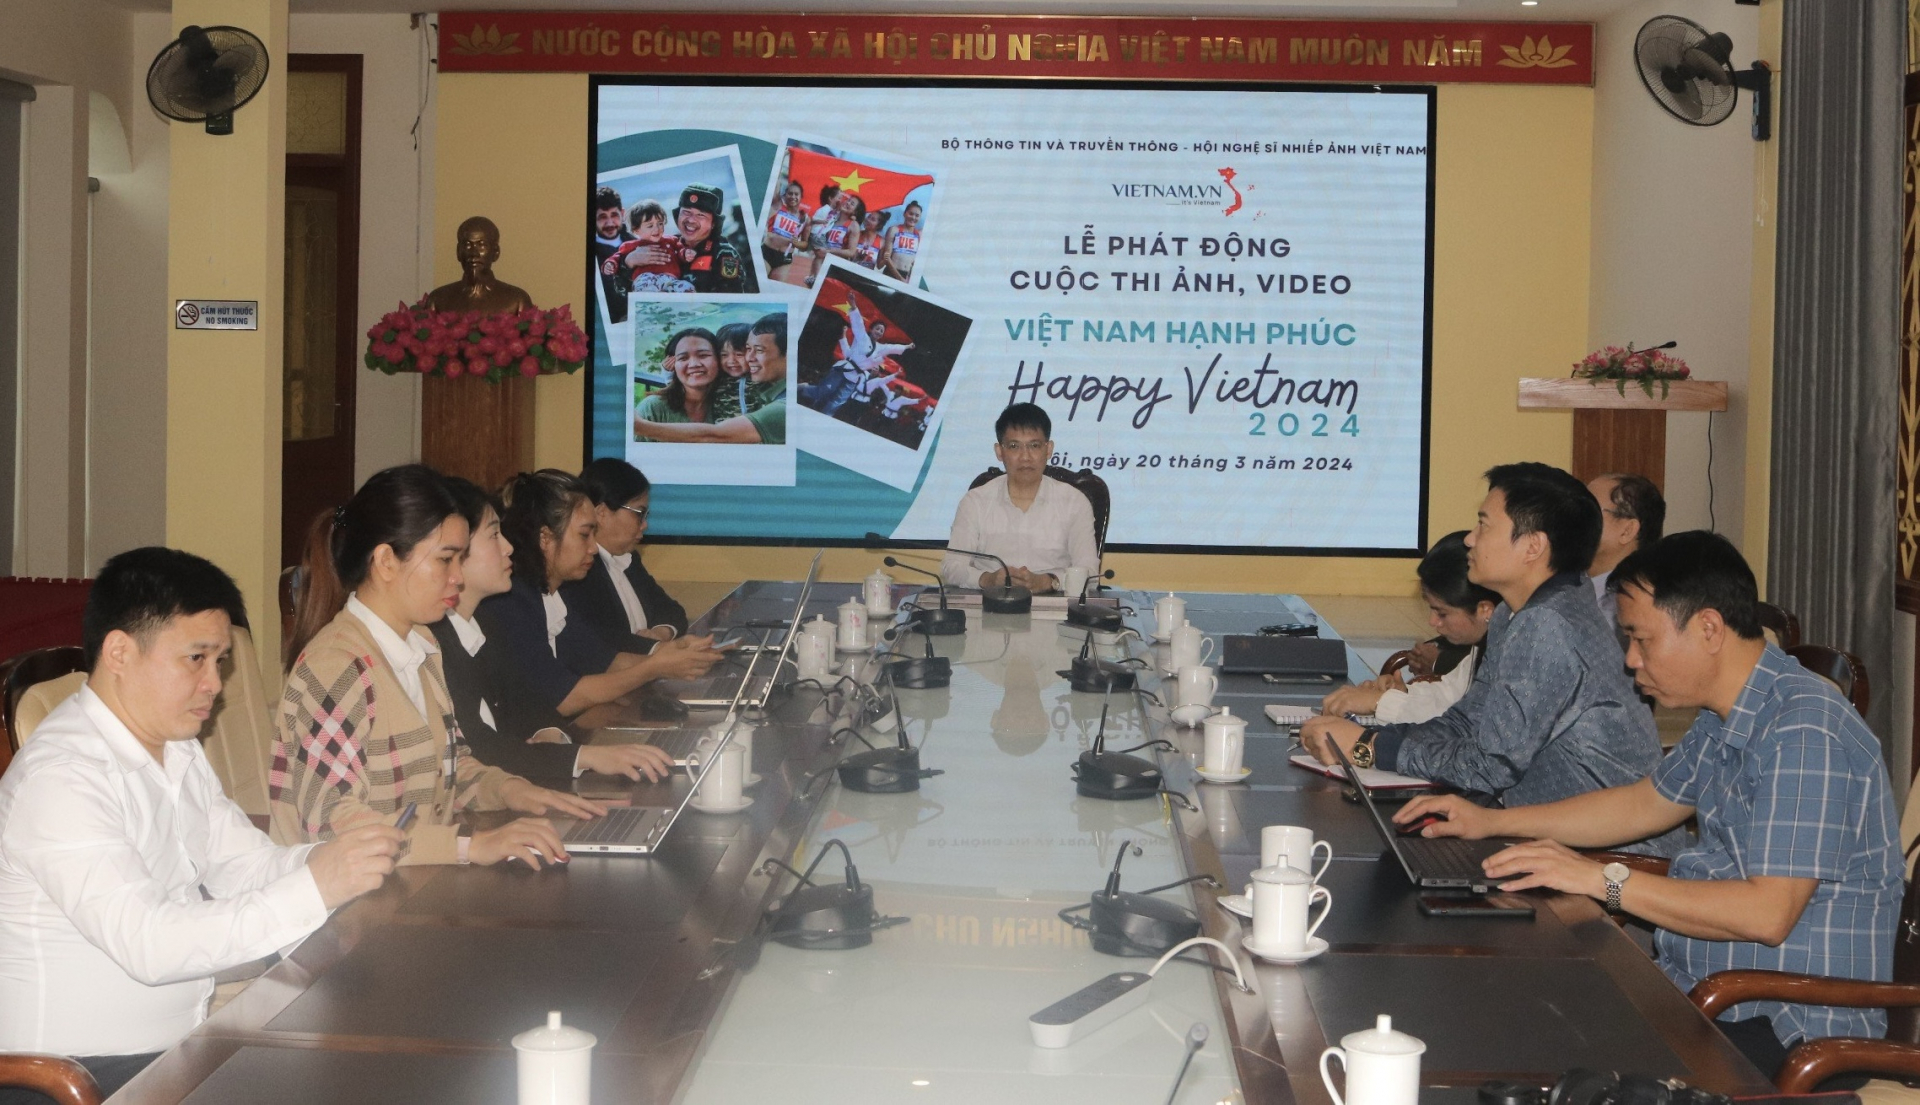 Toàn cảnh buổi lễ phát động cuộc thi ảnh, video “Việt Nam hạnh phúc - Happy Vietnam” tại điểm cầu Hà Giang.